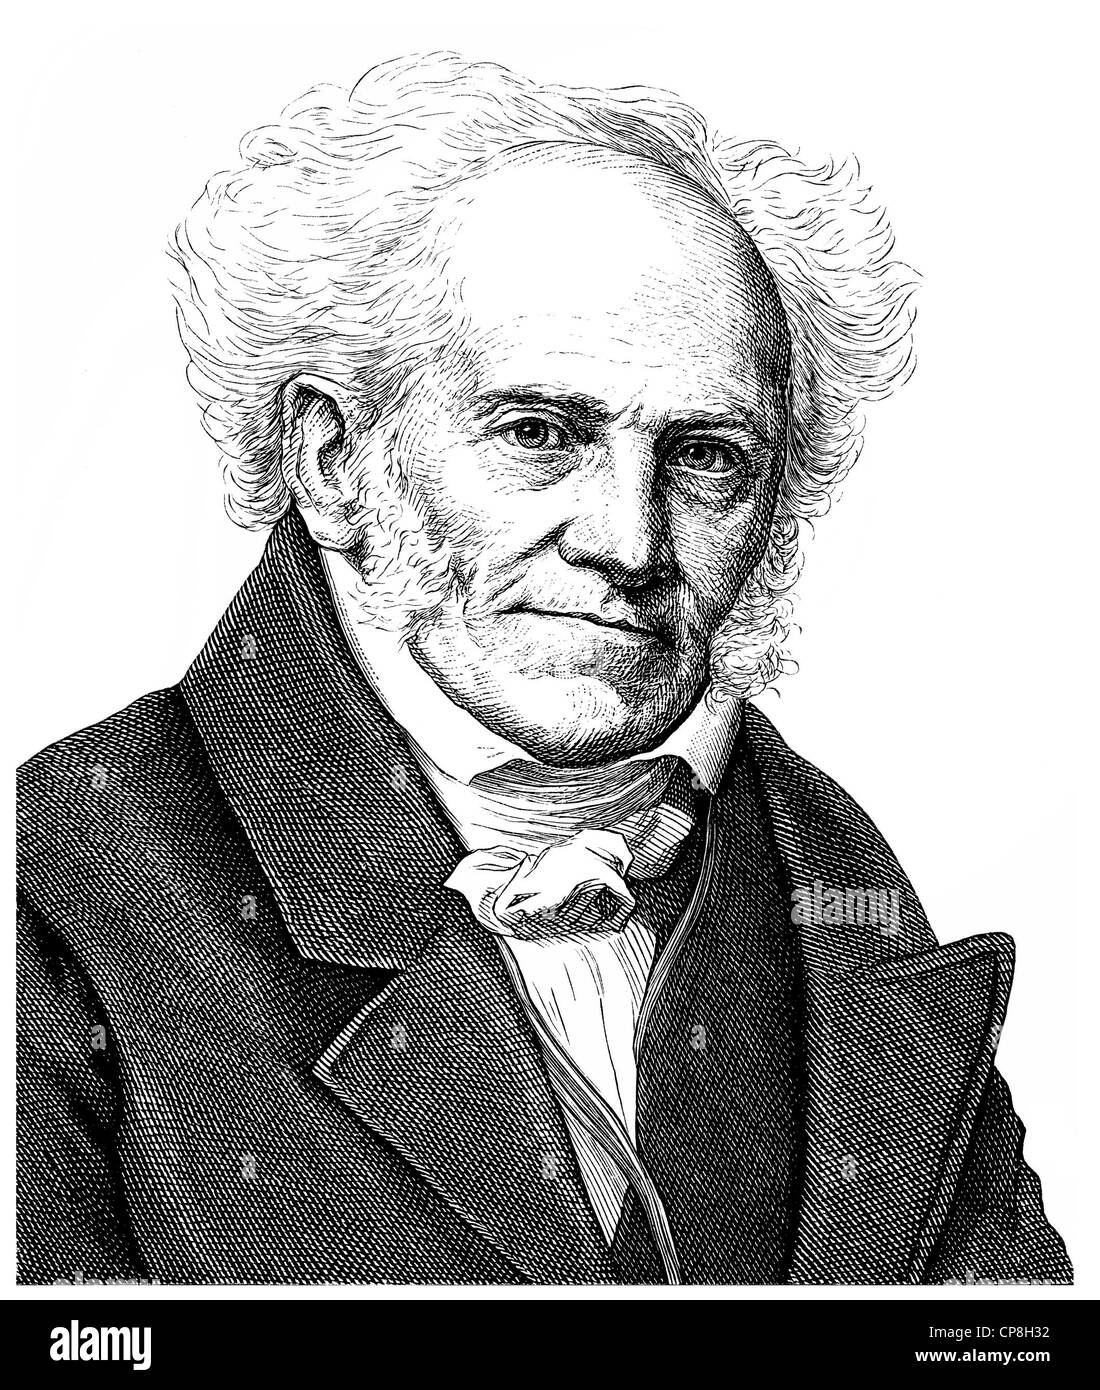 Arthur Schopenhauer, 1788 - 1860, a German philosopher, author and university lecturer, Historische Zeichnung aus dem 19. Jahrhu Stock Photo